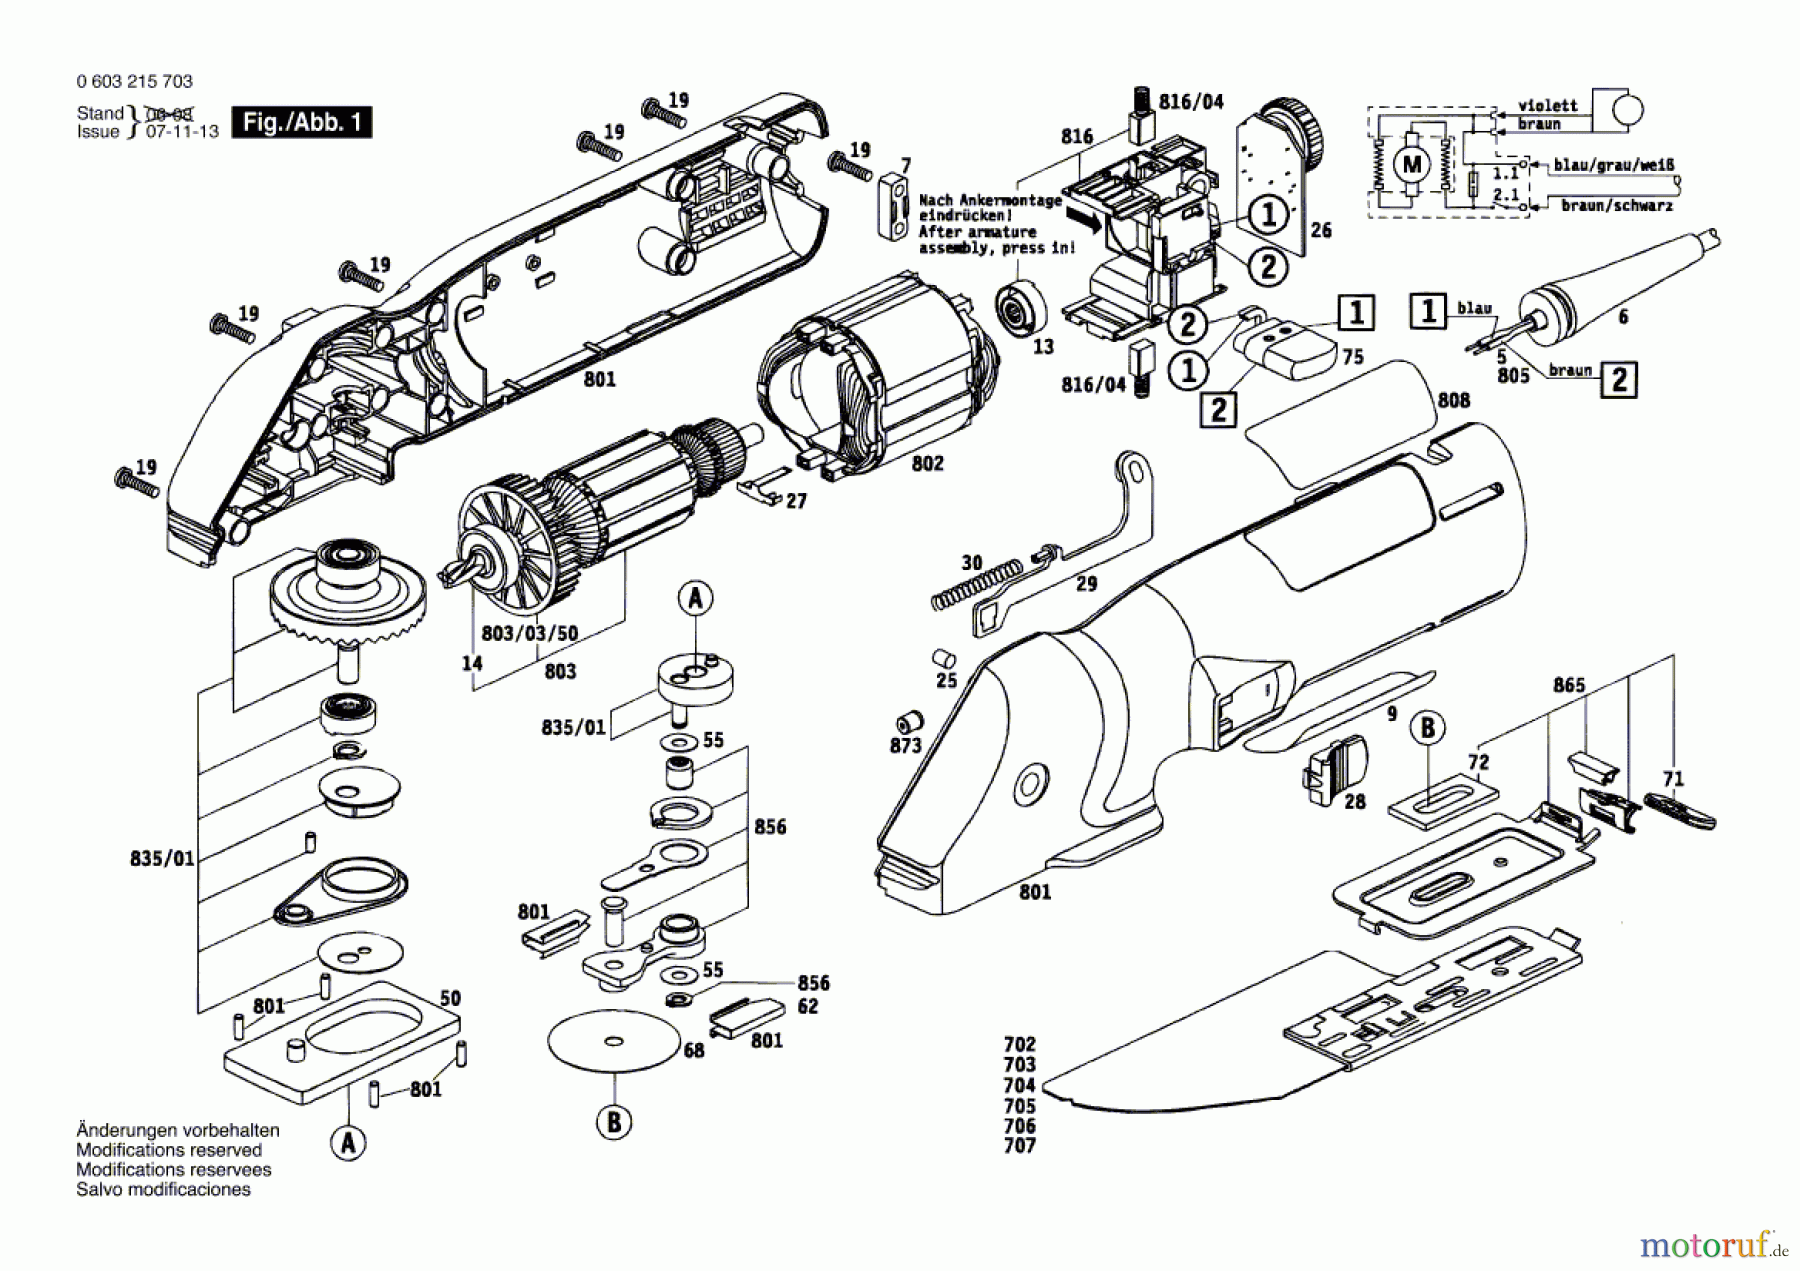  Bosch Werkzeug Feinschnittsäge PFS 280 E Seite 1